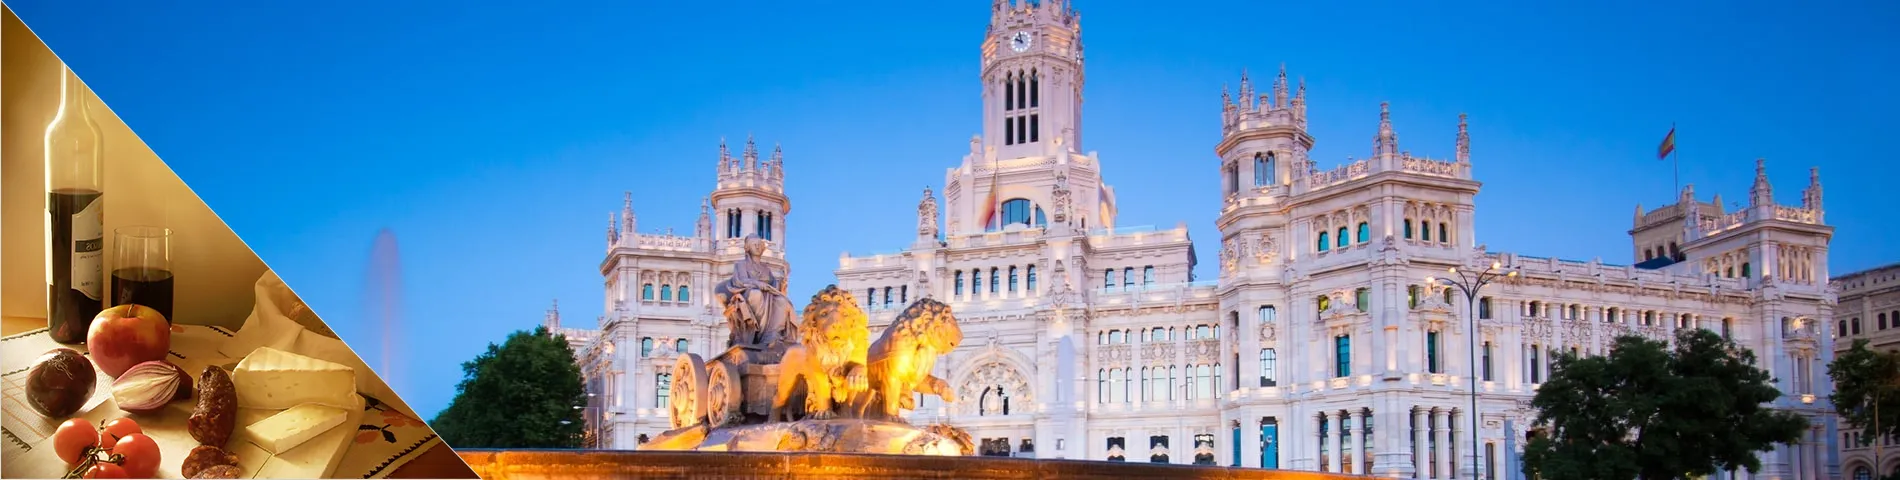 Мадрид - Испанский и культура